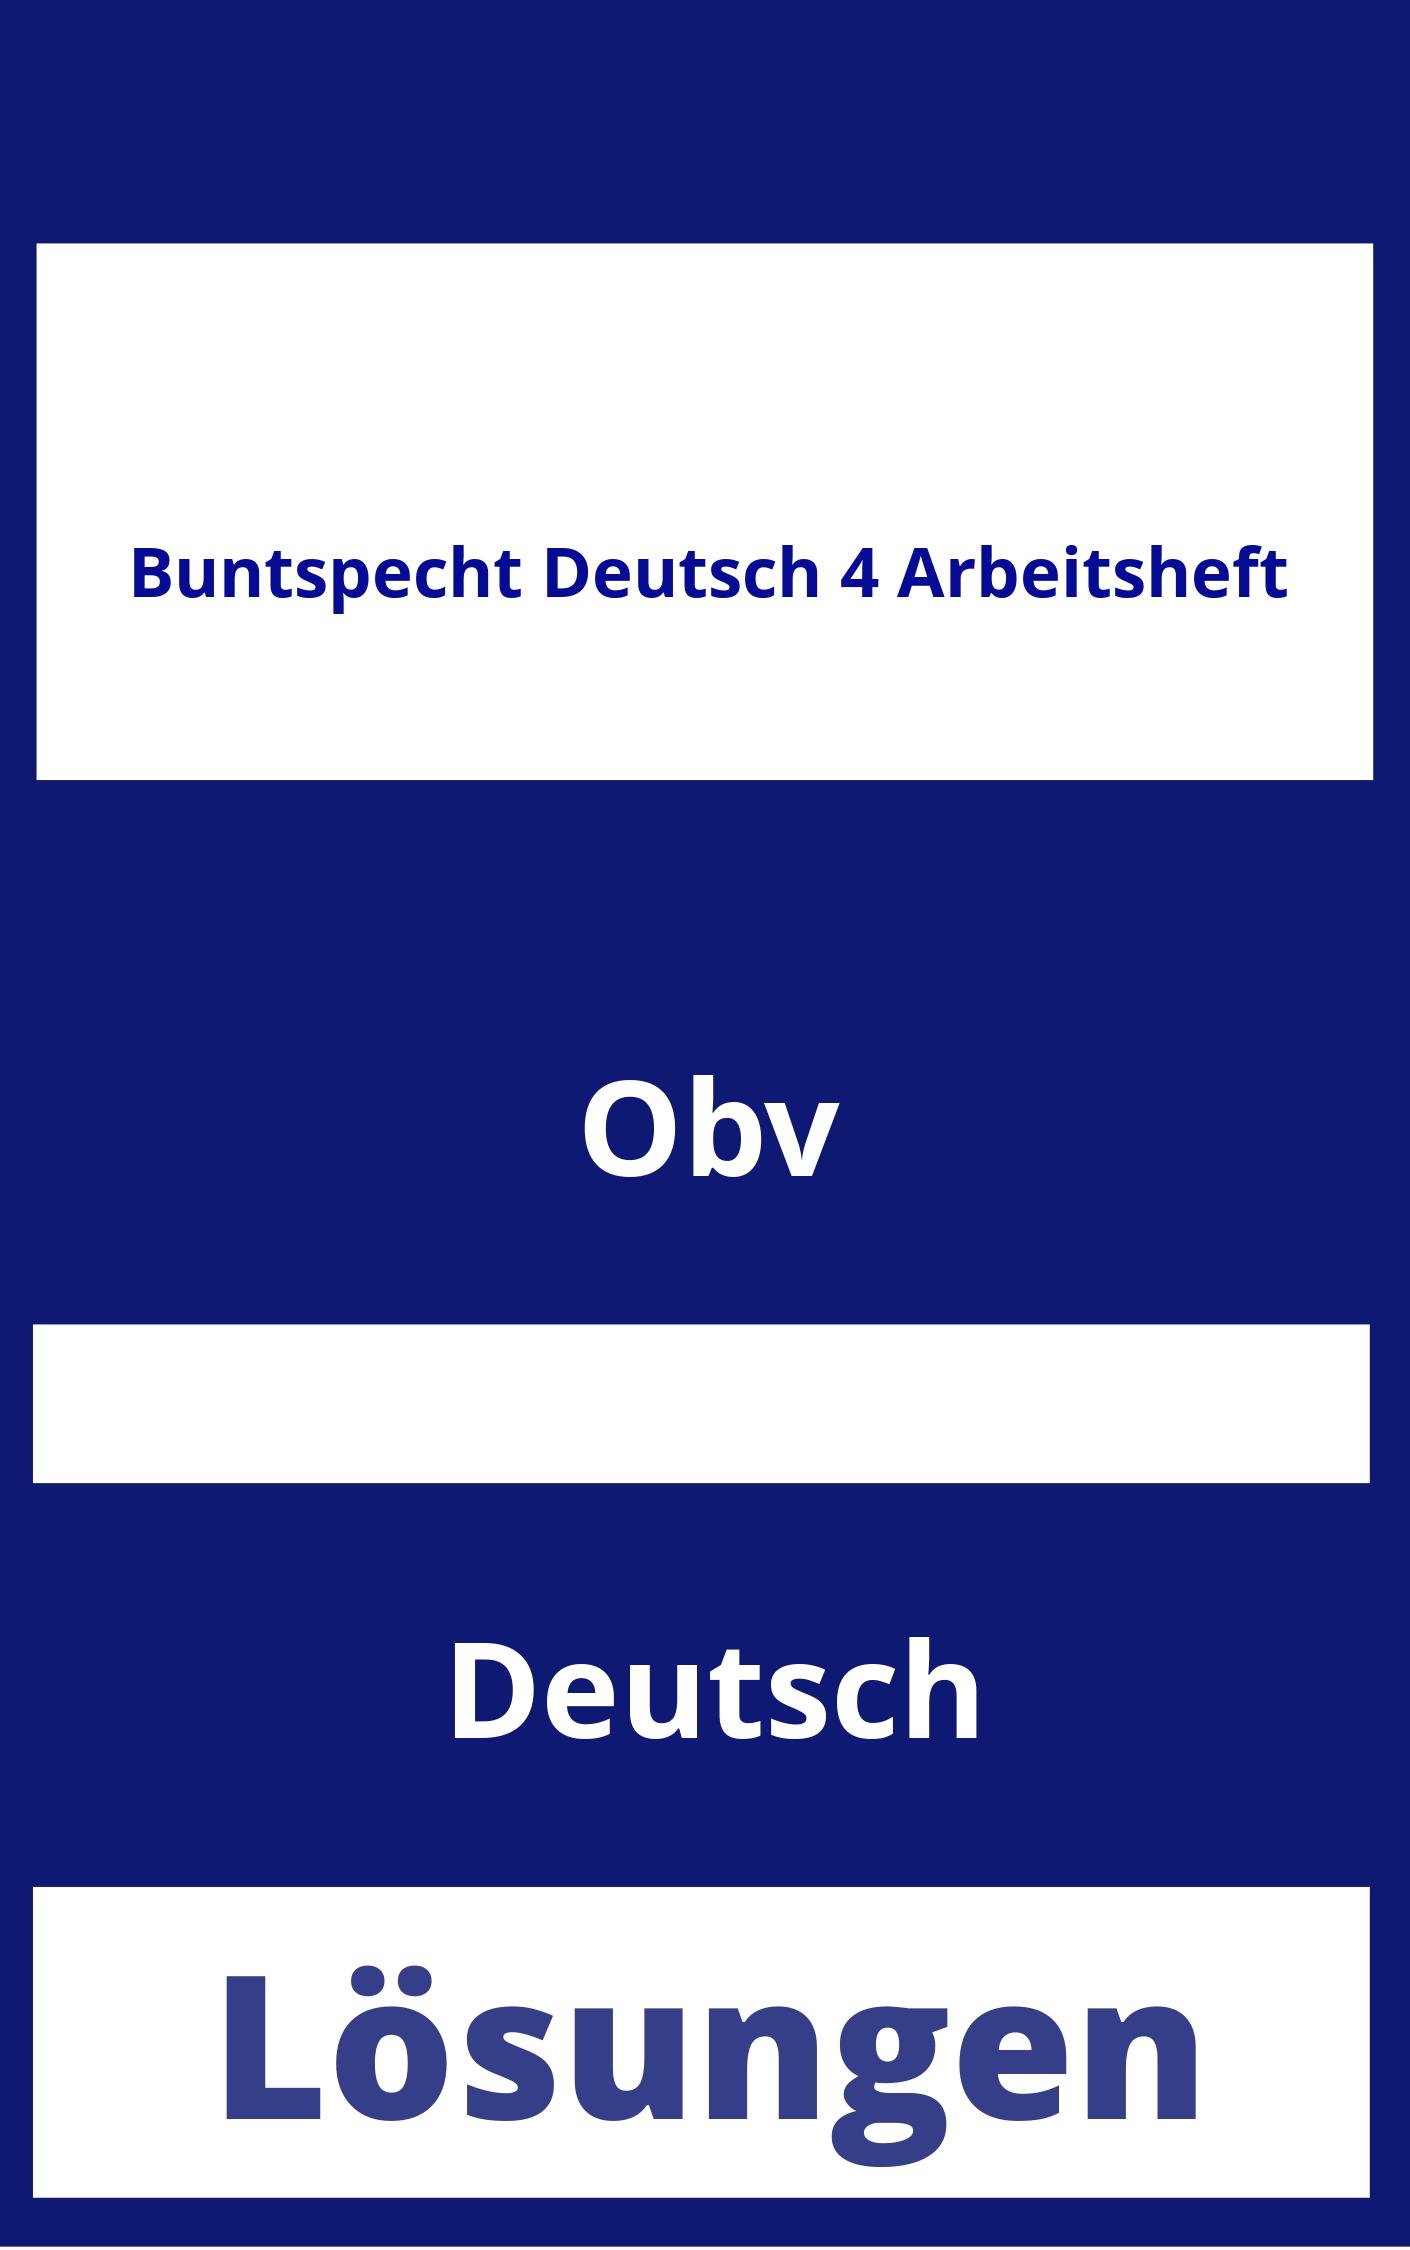 Buntspecht Deutsch 4 Arbeitsheft Lösungen PDF